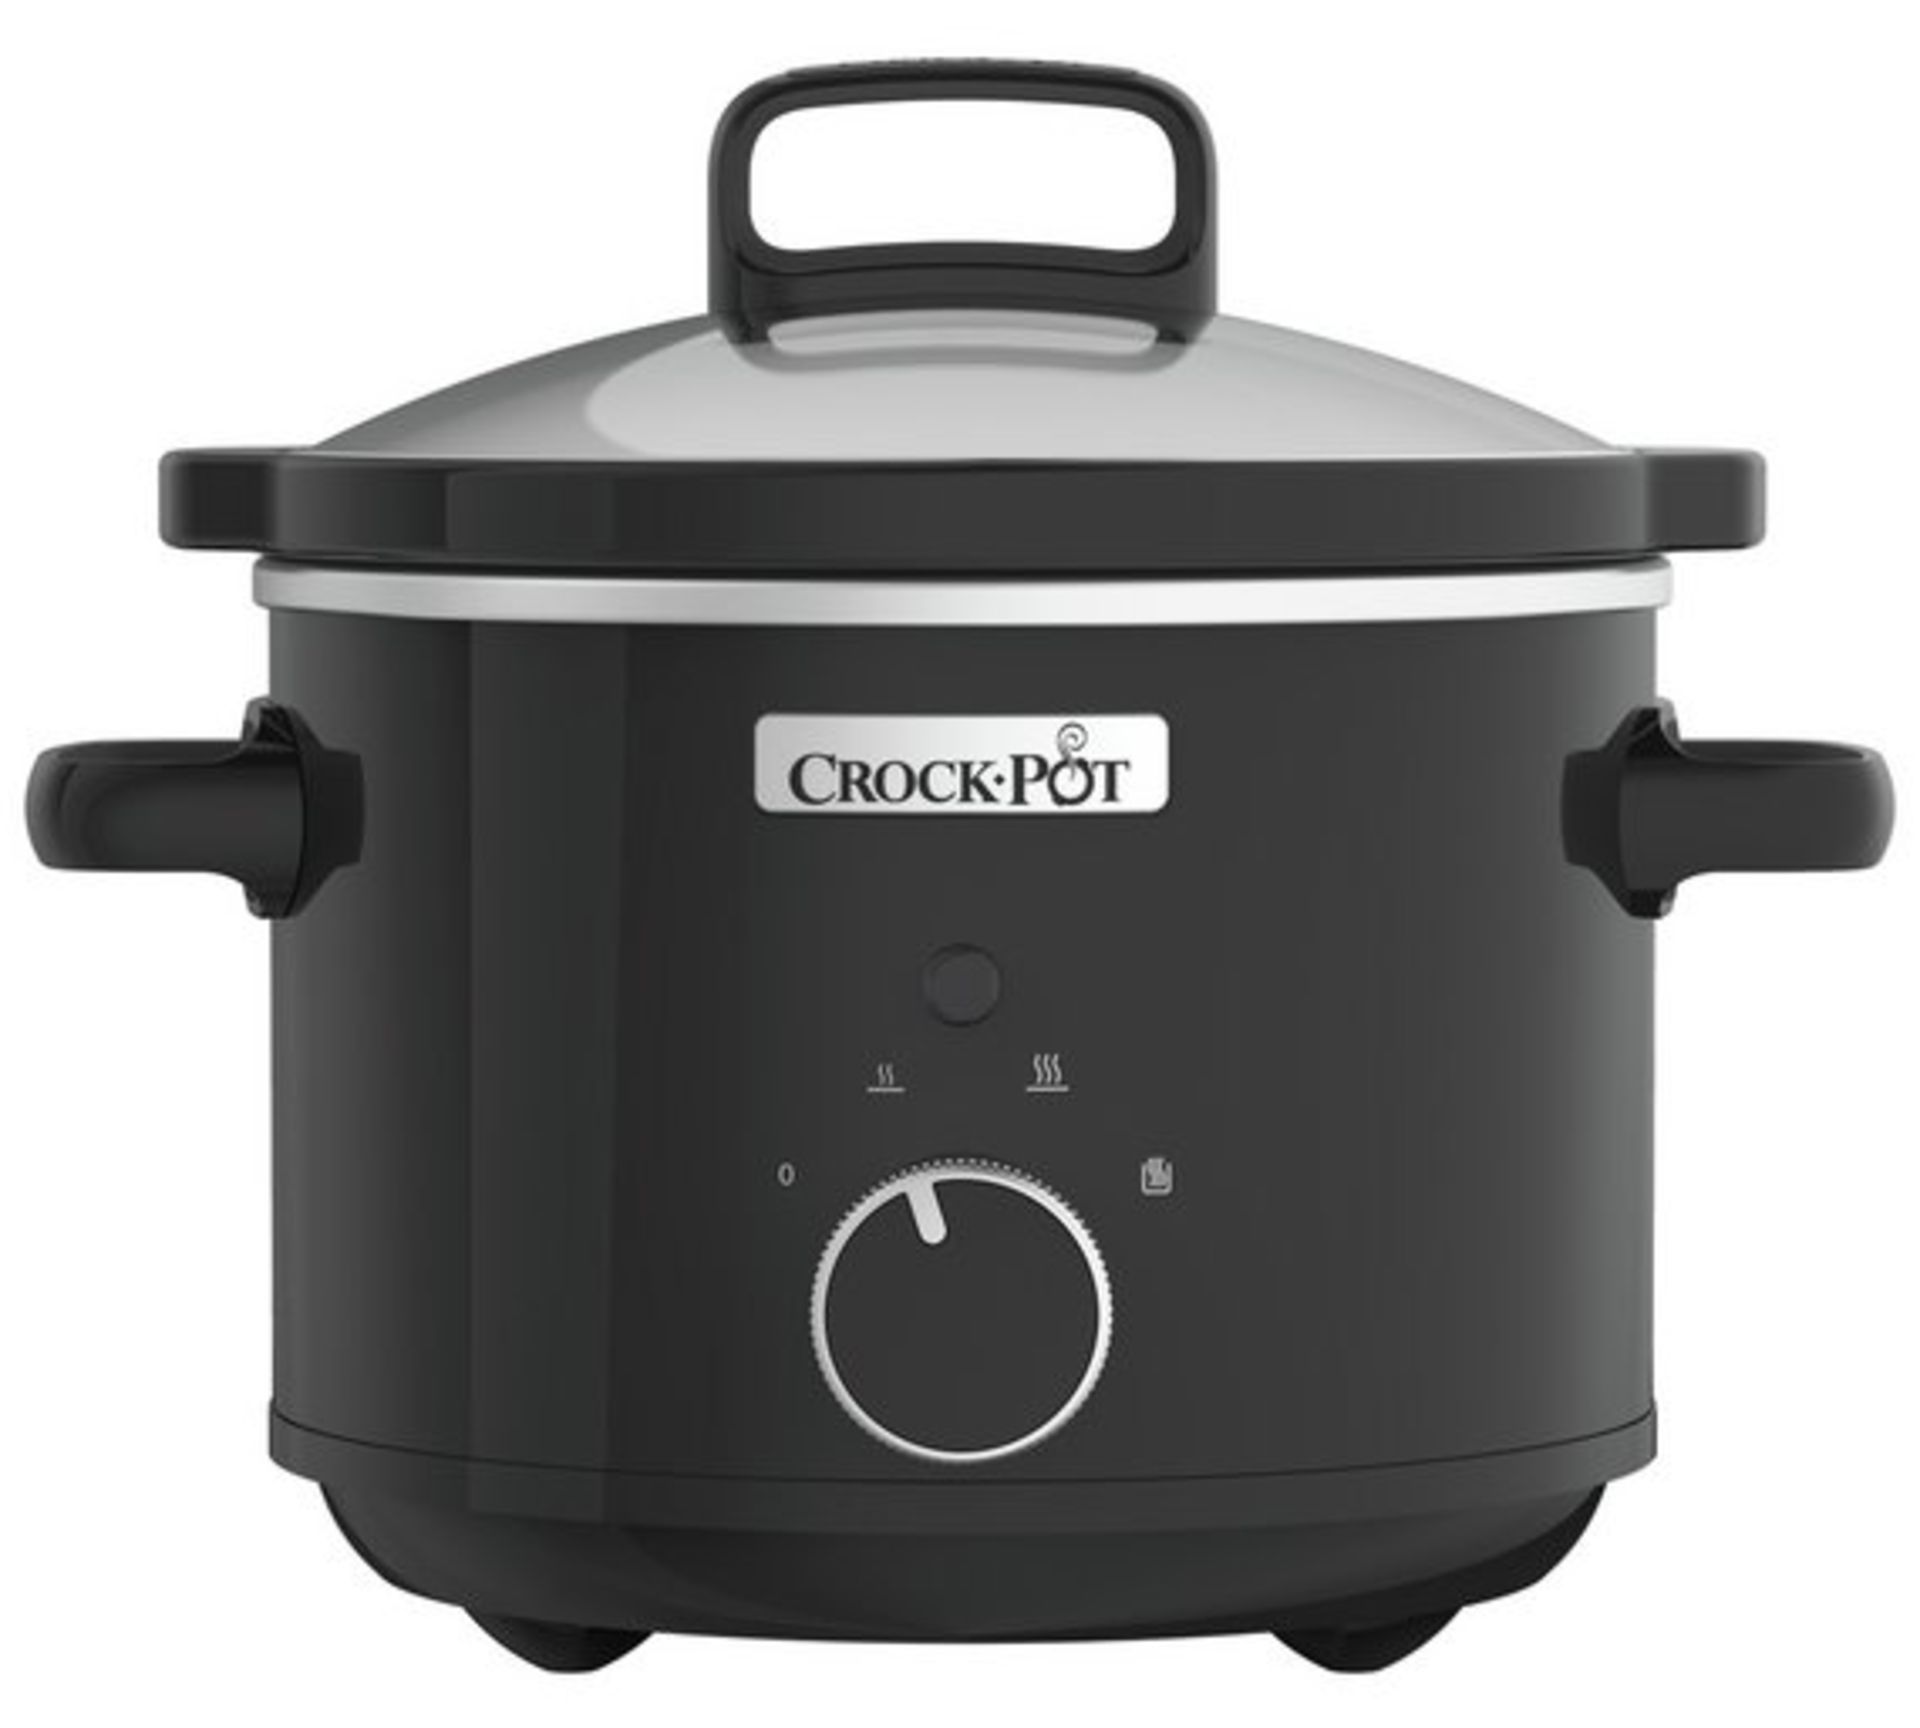 V Brand New 2.4L Crock-Pot Slow Cooker - £31.99 at Espares.co.uk - Black - Dishwasher Safe - Oven - Image 2 of 3